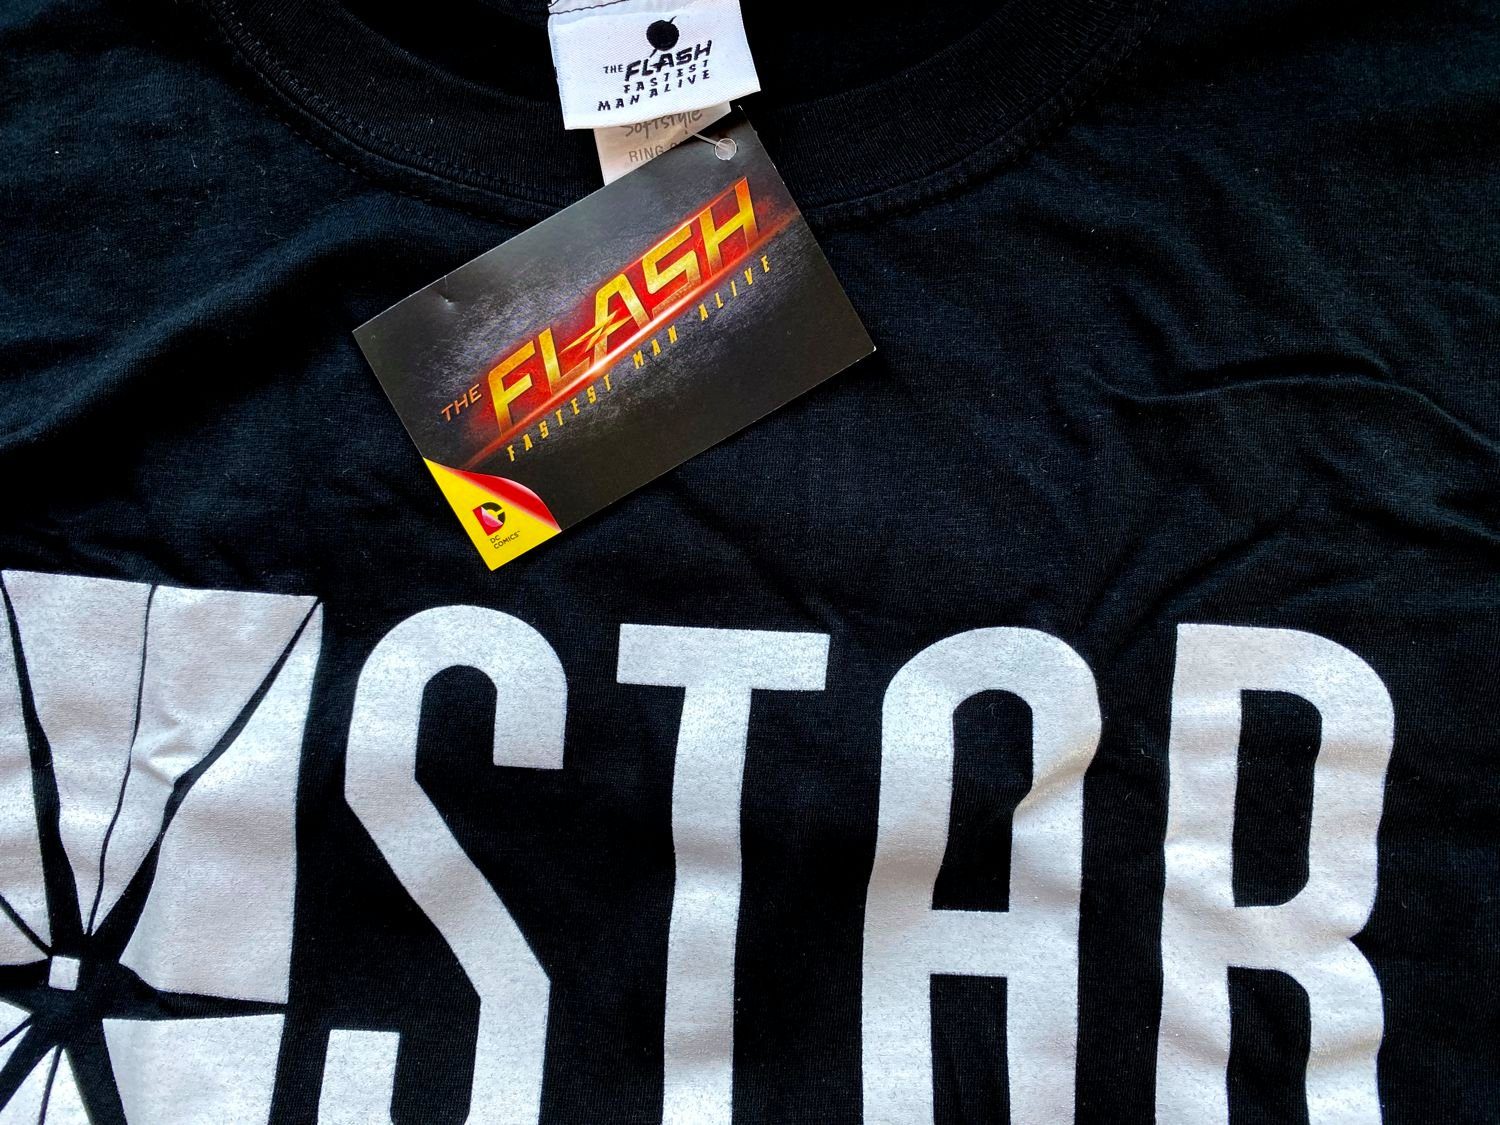 + The Print-Shirt L Jugendliche S M Gr. T-Shirt XXL Erwachsene STAR Flash TV LABORATORIES Flash Schwarz XL